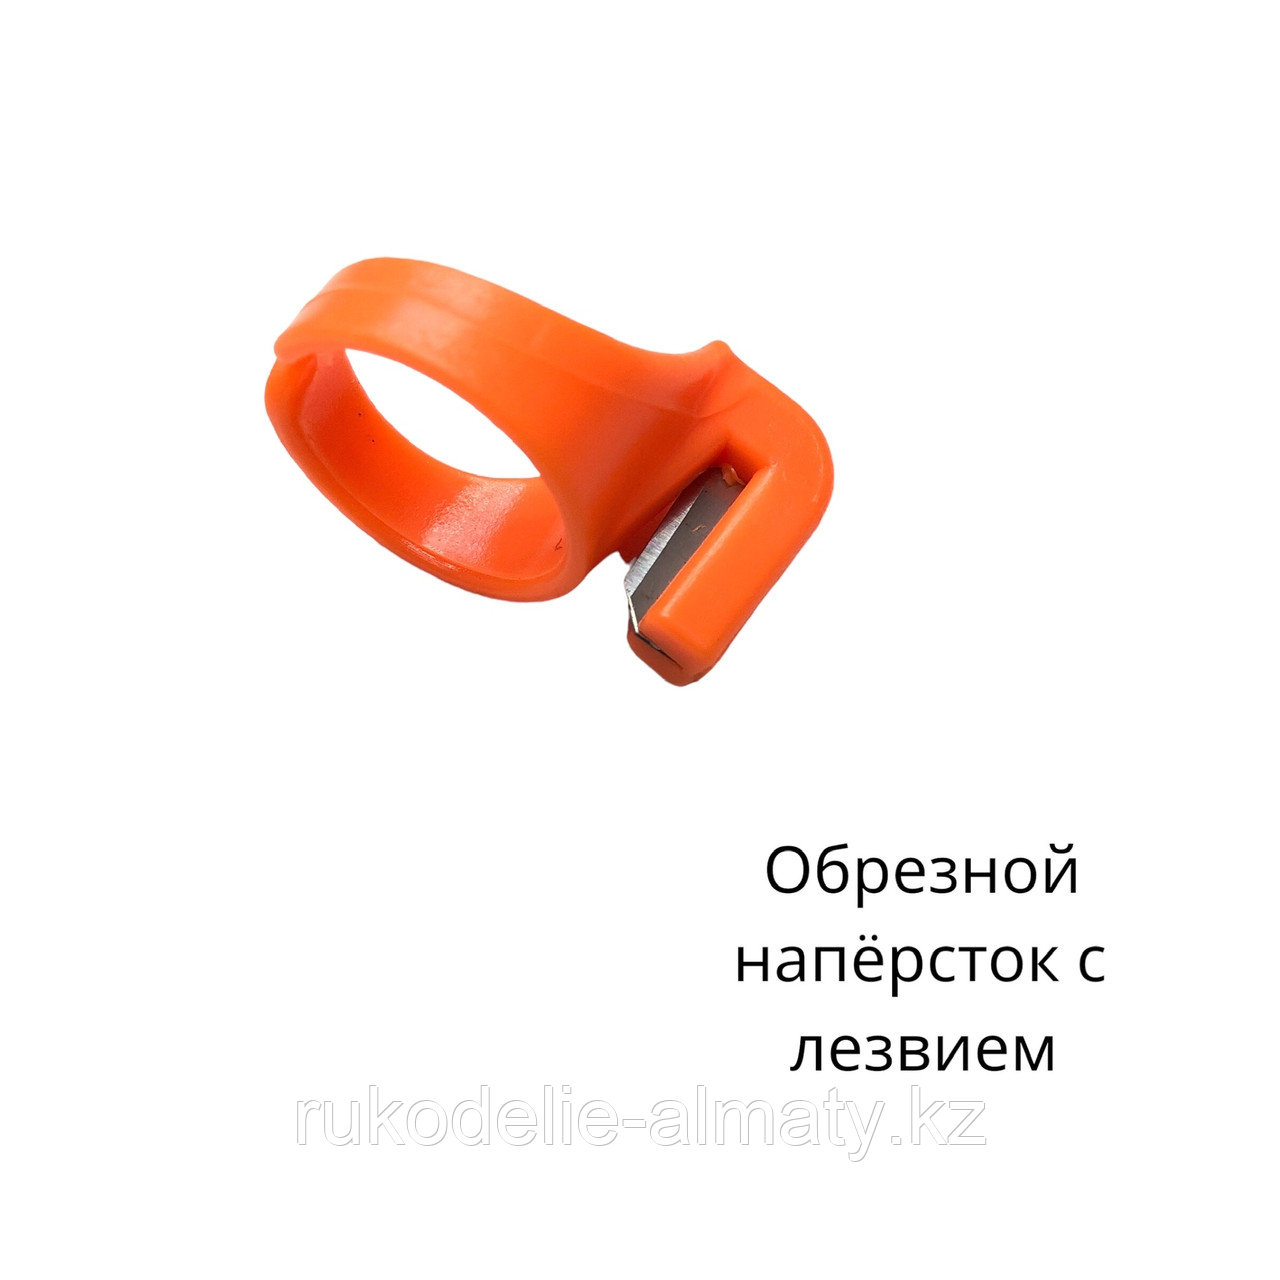 Наперсток-кольцо с лезвием для обрезания нити